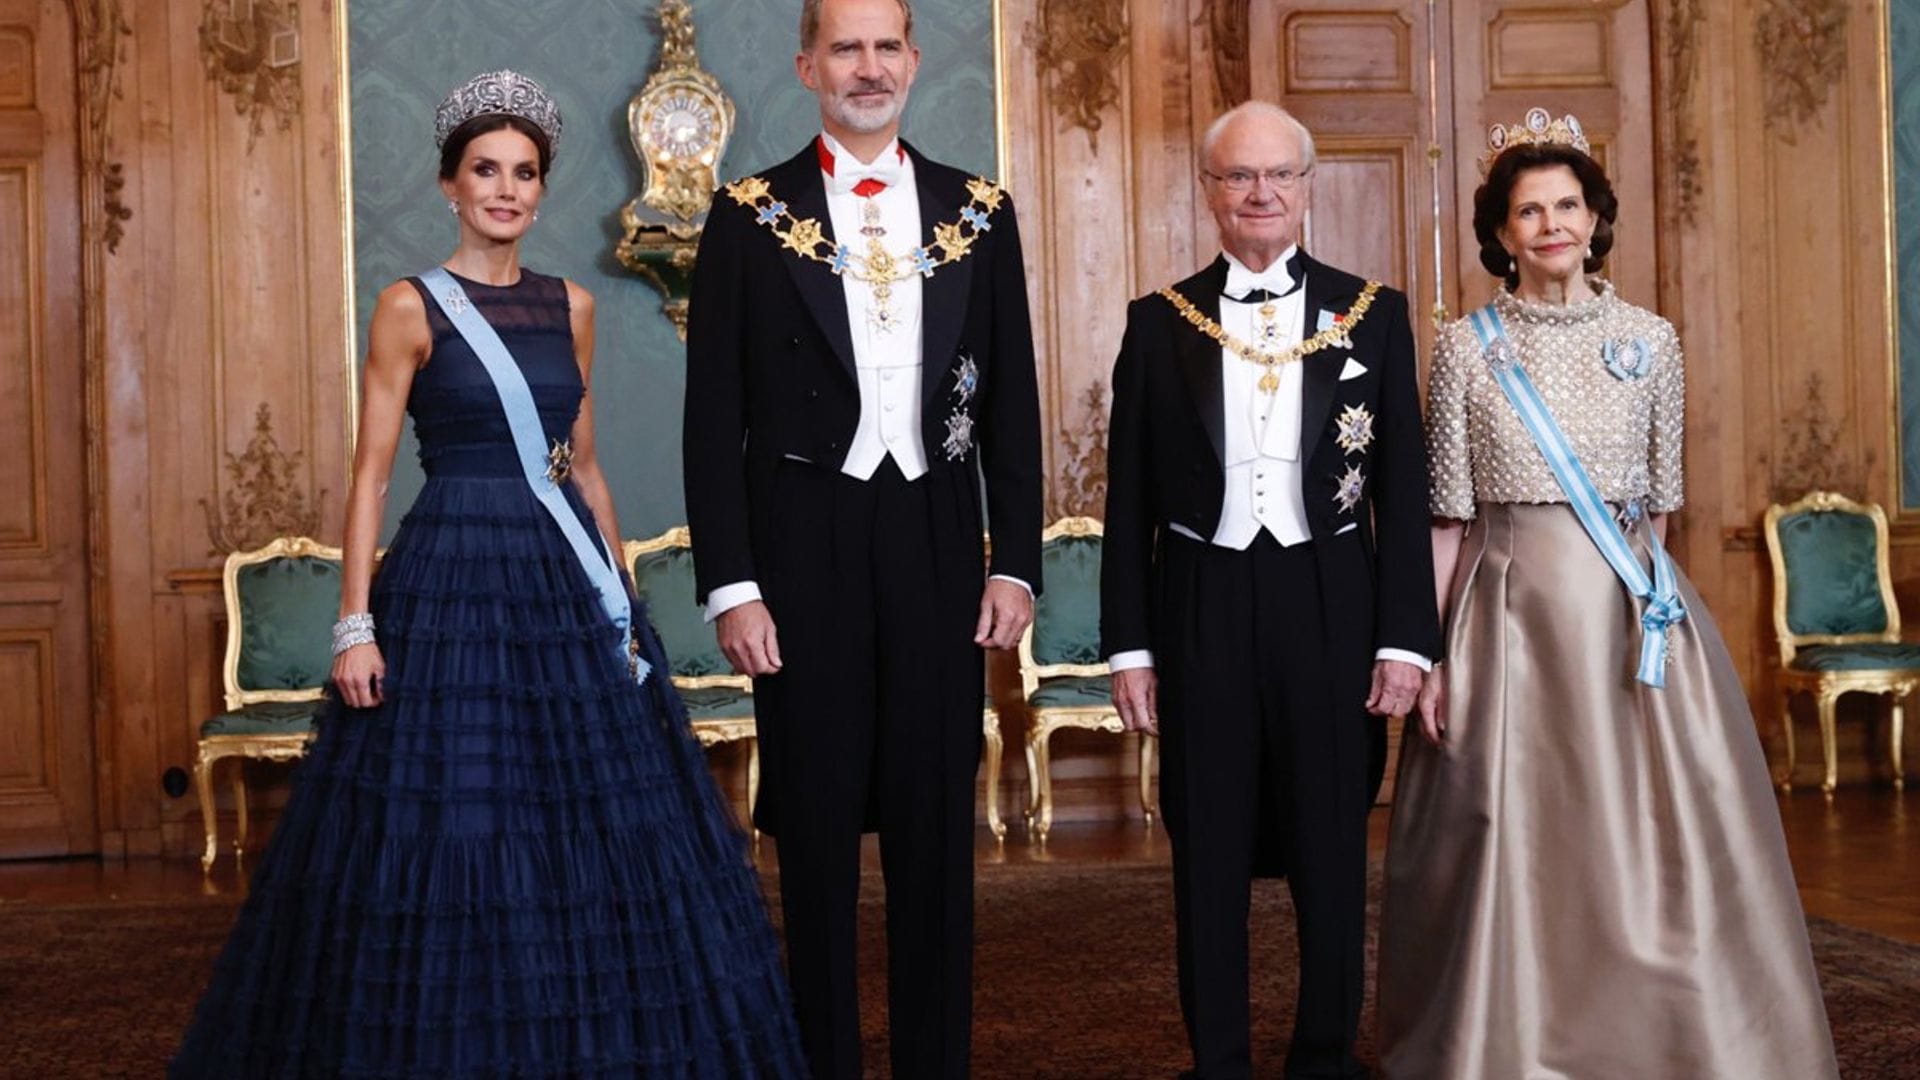 Los reyes de España cenan en un palacio sueco con fantasmas legendarios